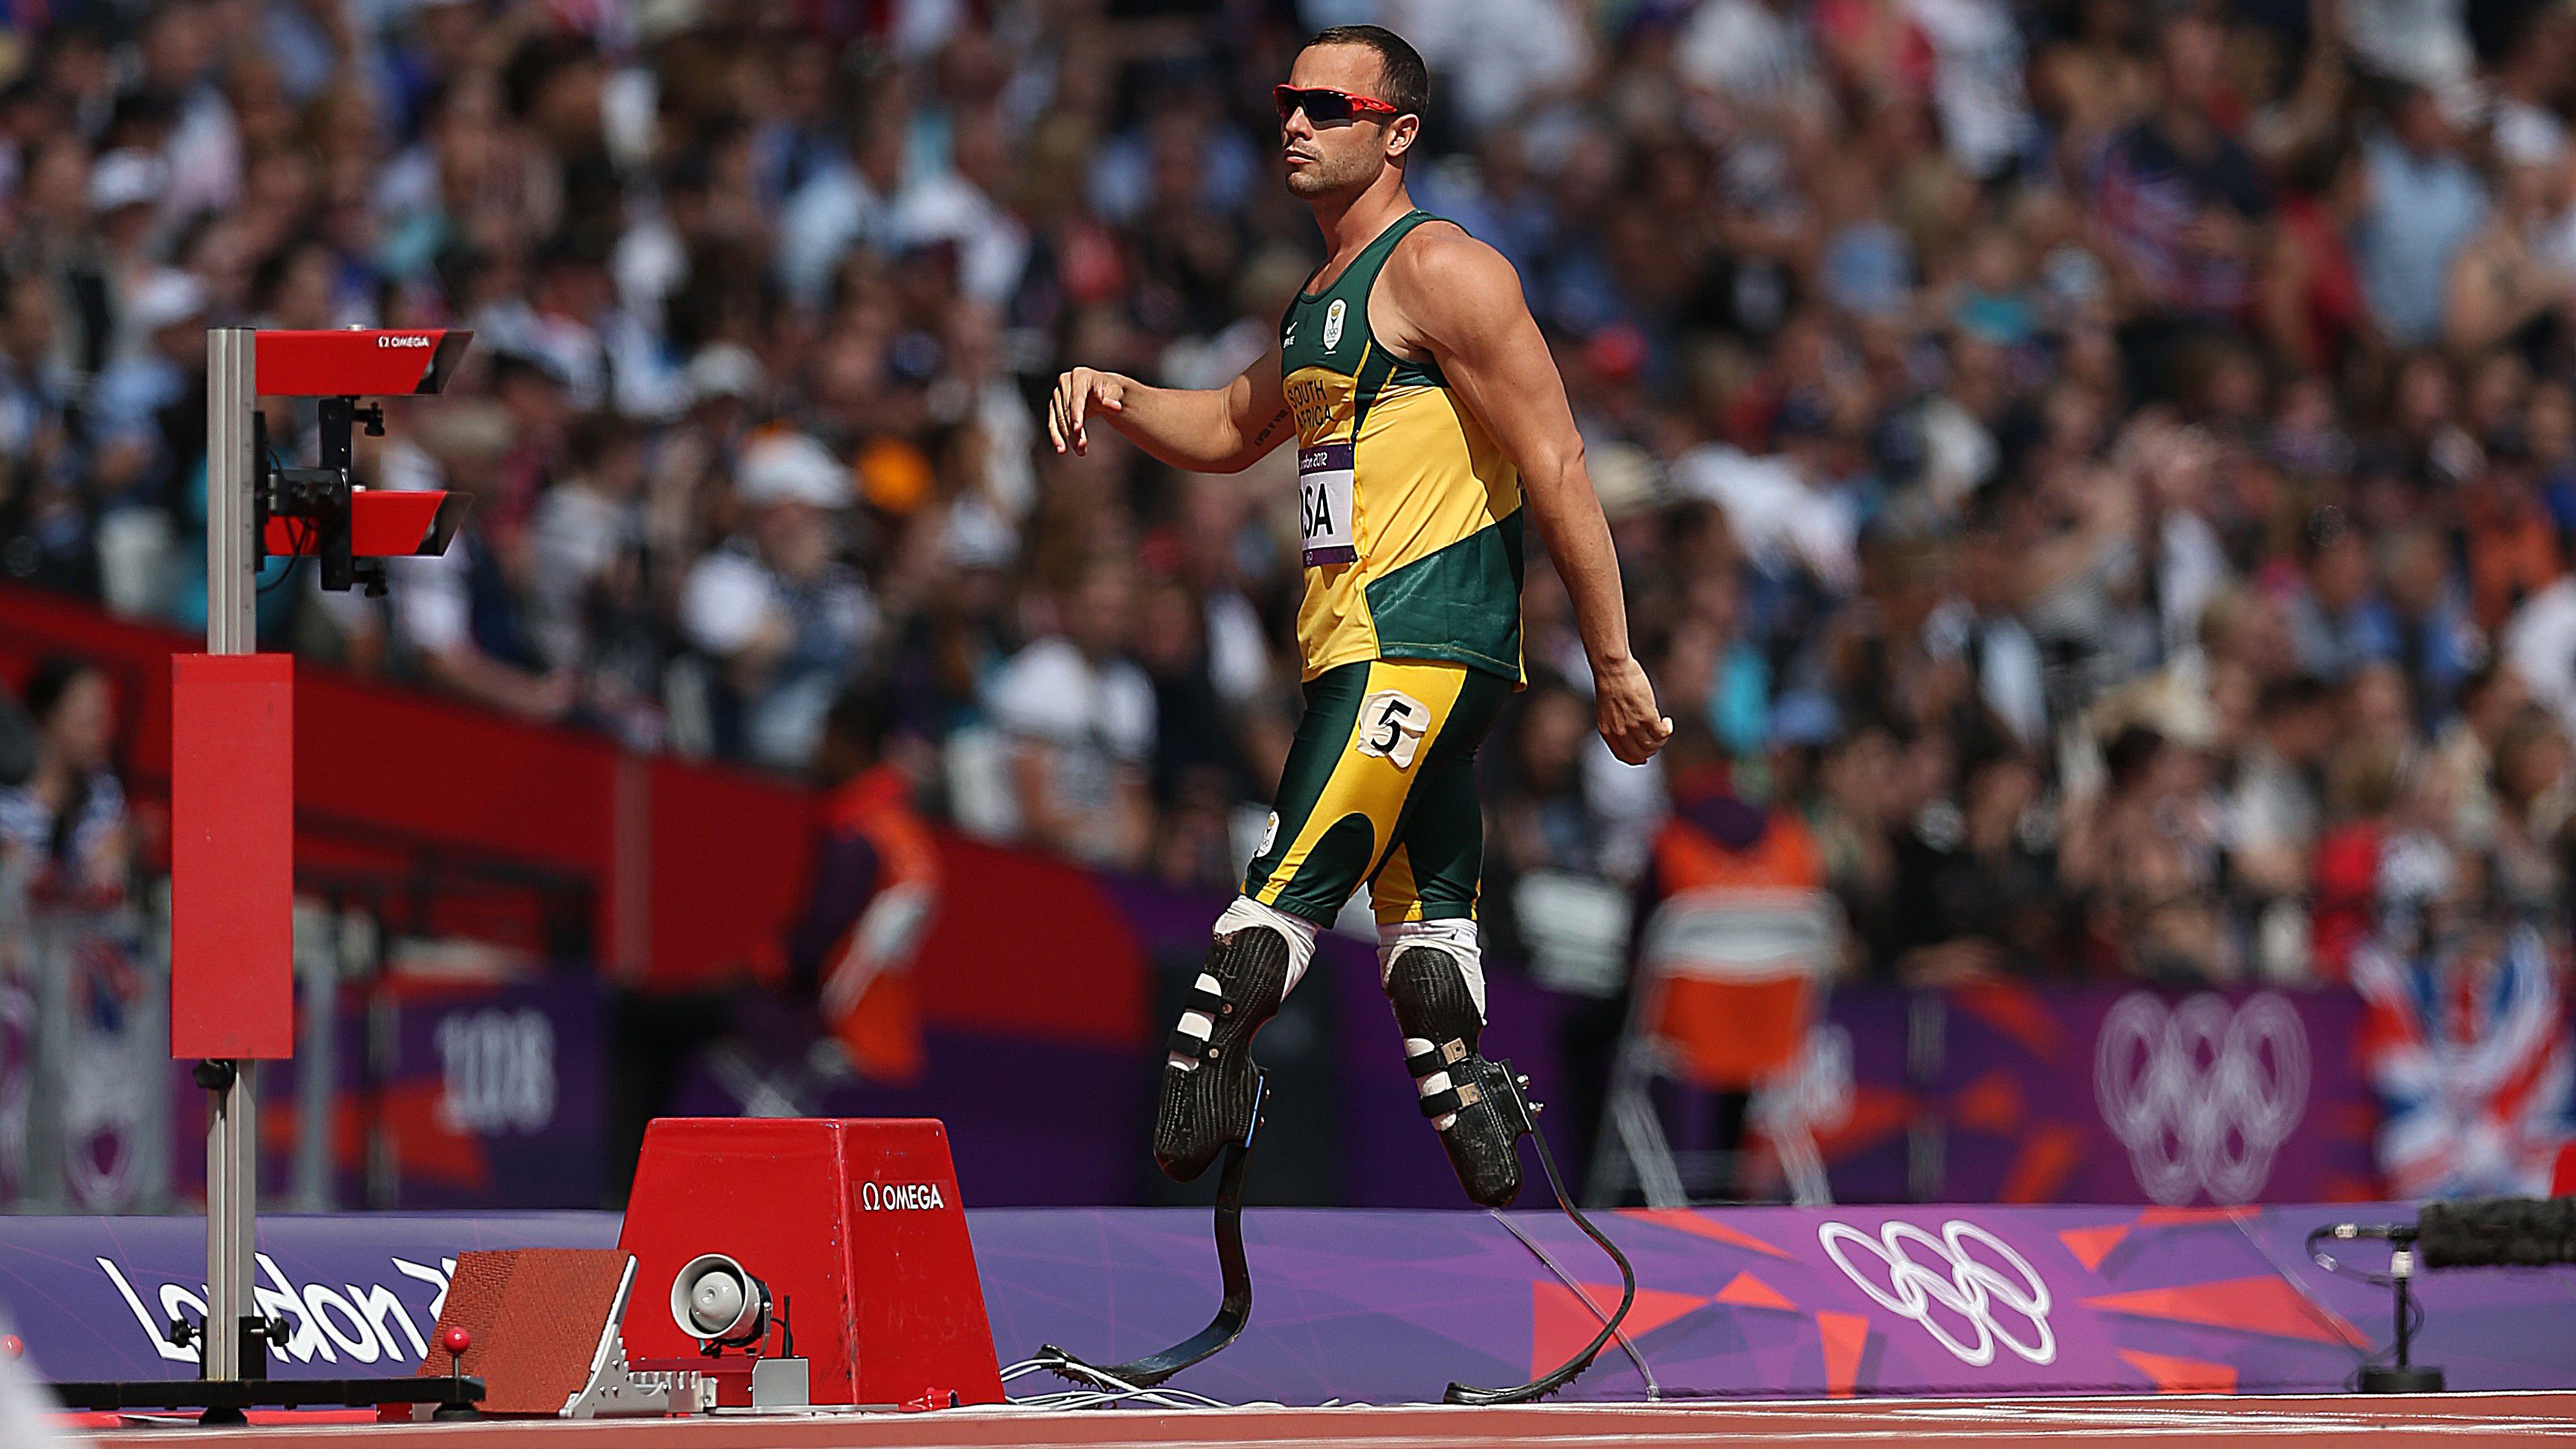 Oscar Pistorius paralimpiai bajnok dél-afrikai rövidtávfutó. Az első volt, aki műlábakkal olimpián fejezett be versenyt.